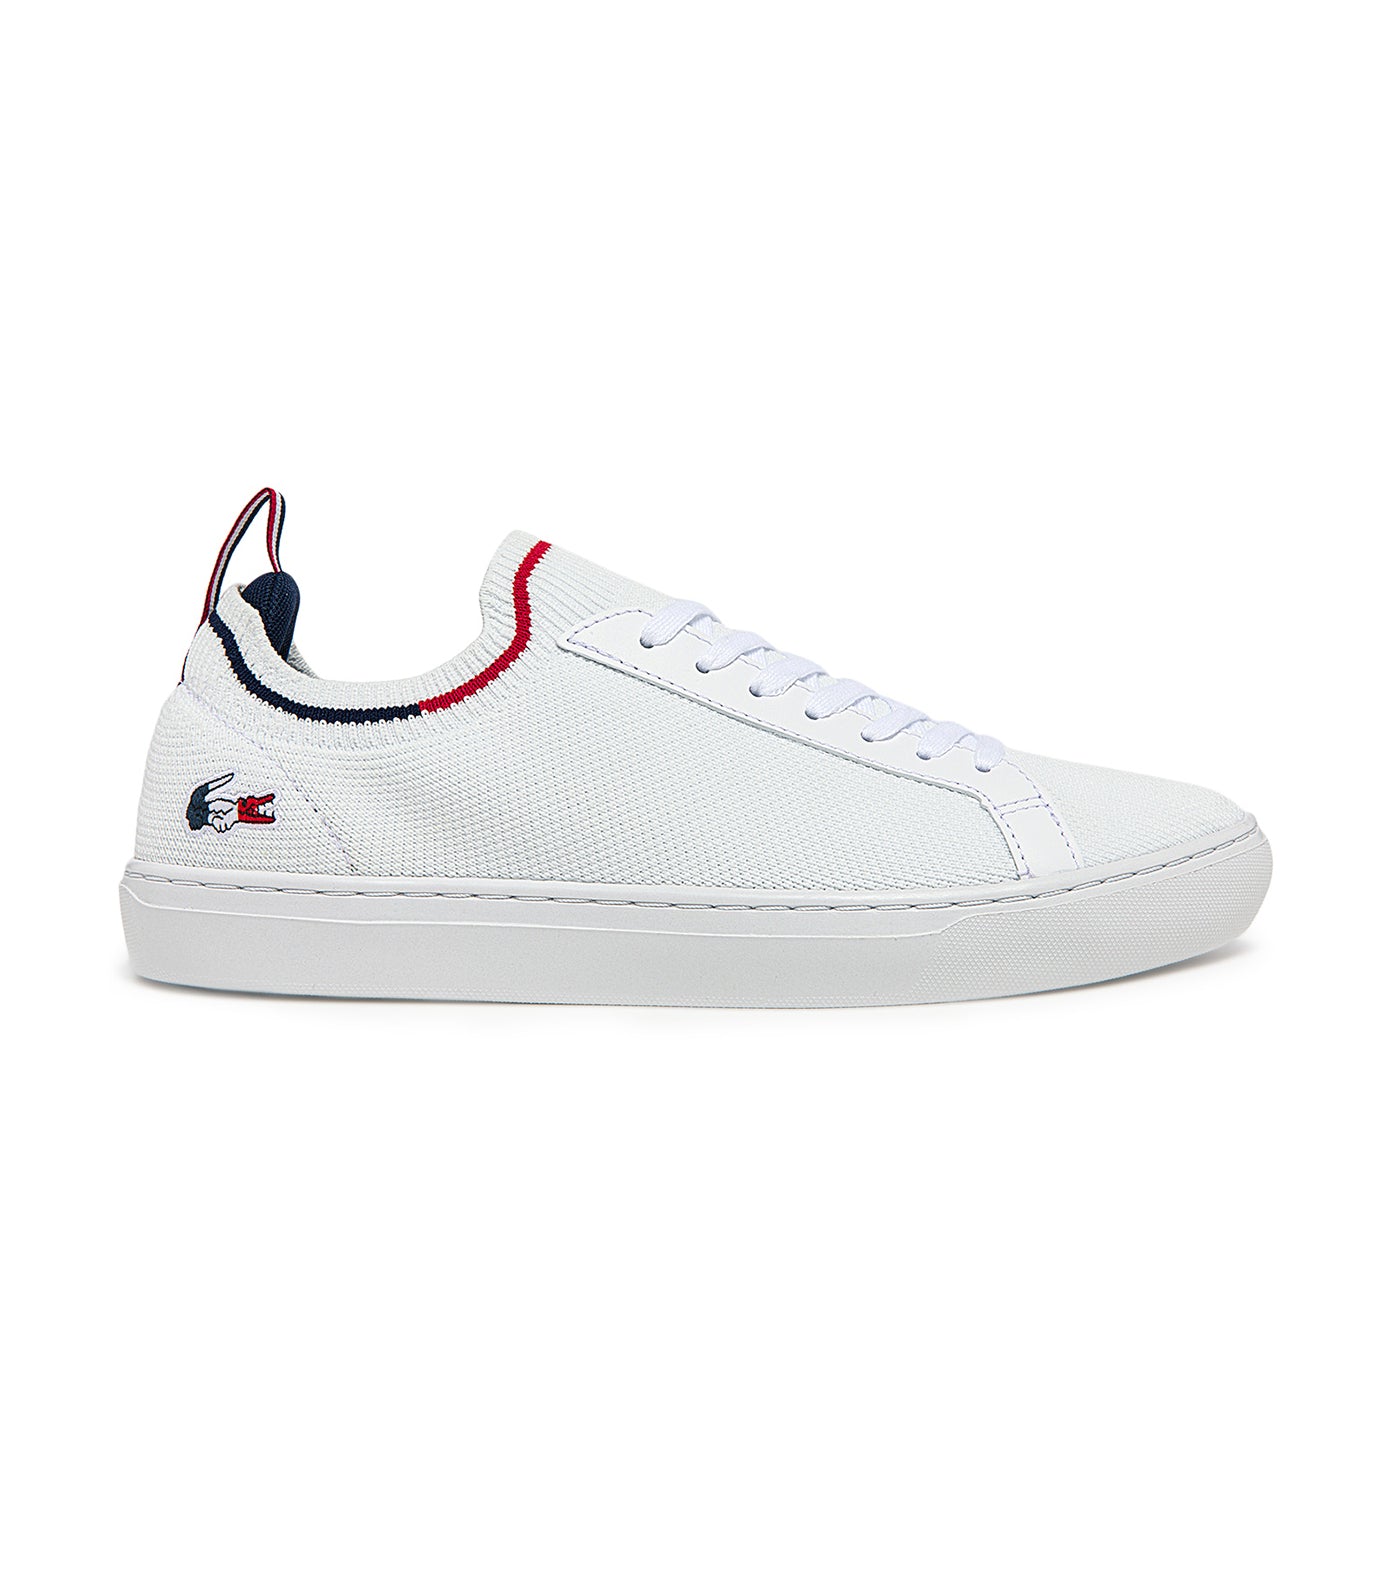 Lacoste Men's La Piquée Textile Tricolor Sneakers White/Navy/Red